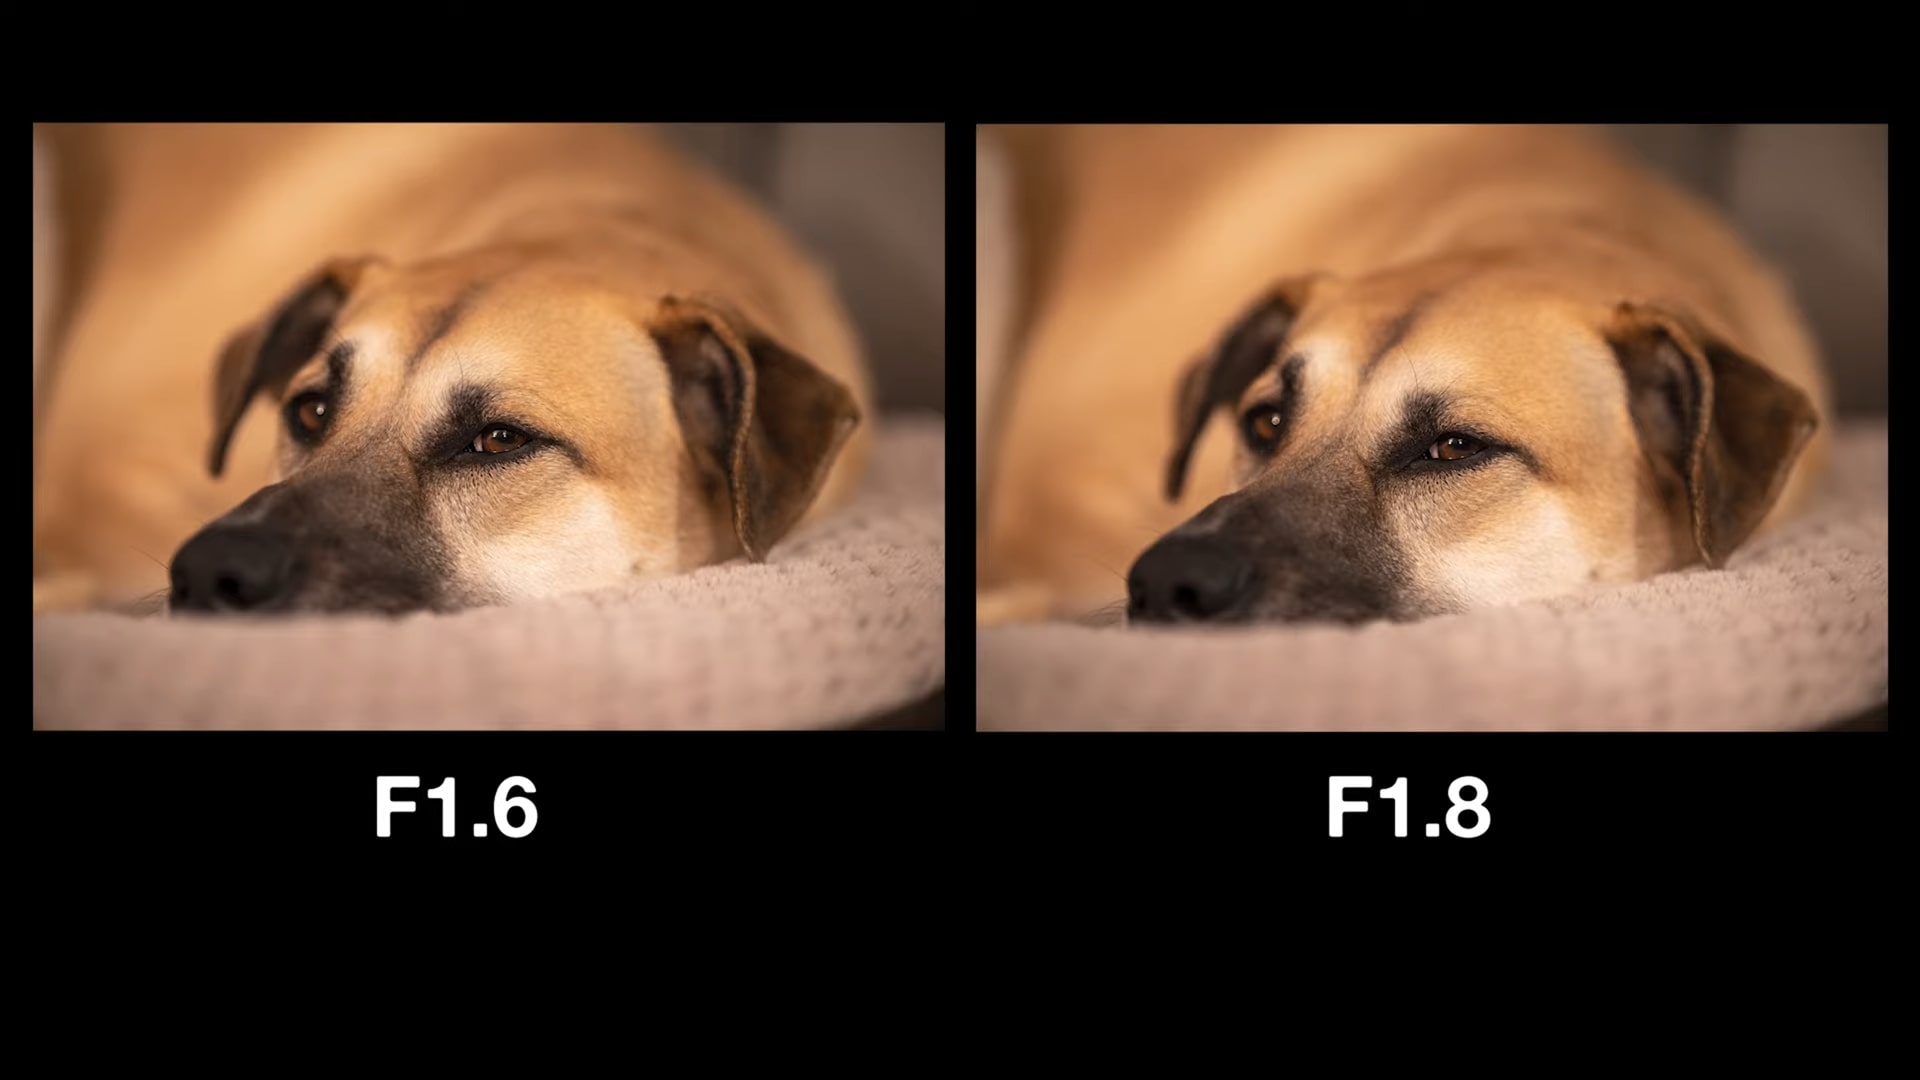 Ống kính Viltrox 85mm F1.8 cho Fujifilm và Sony được nâng cấp thành F1.6 sau khi cập nhật firmware